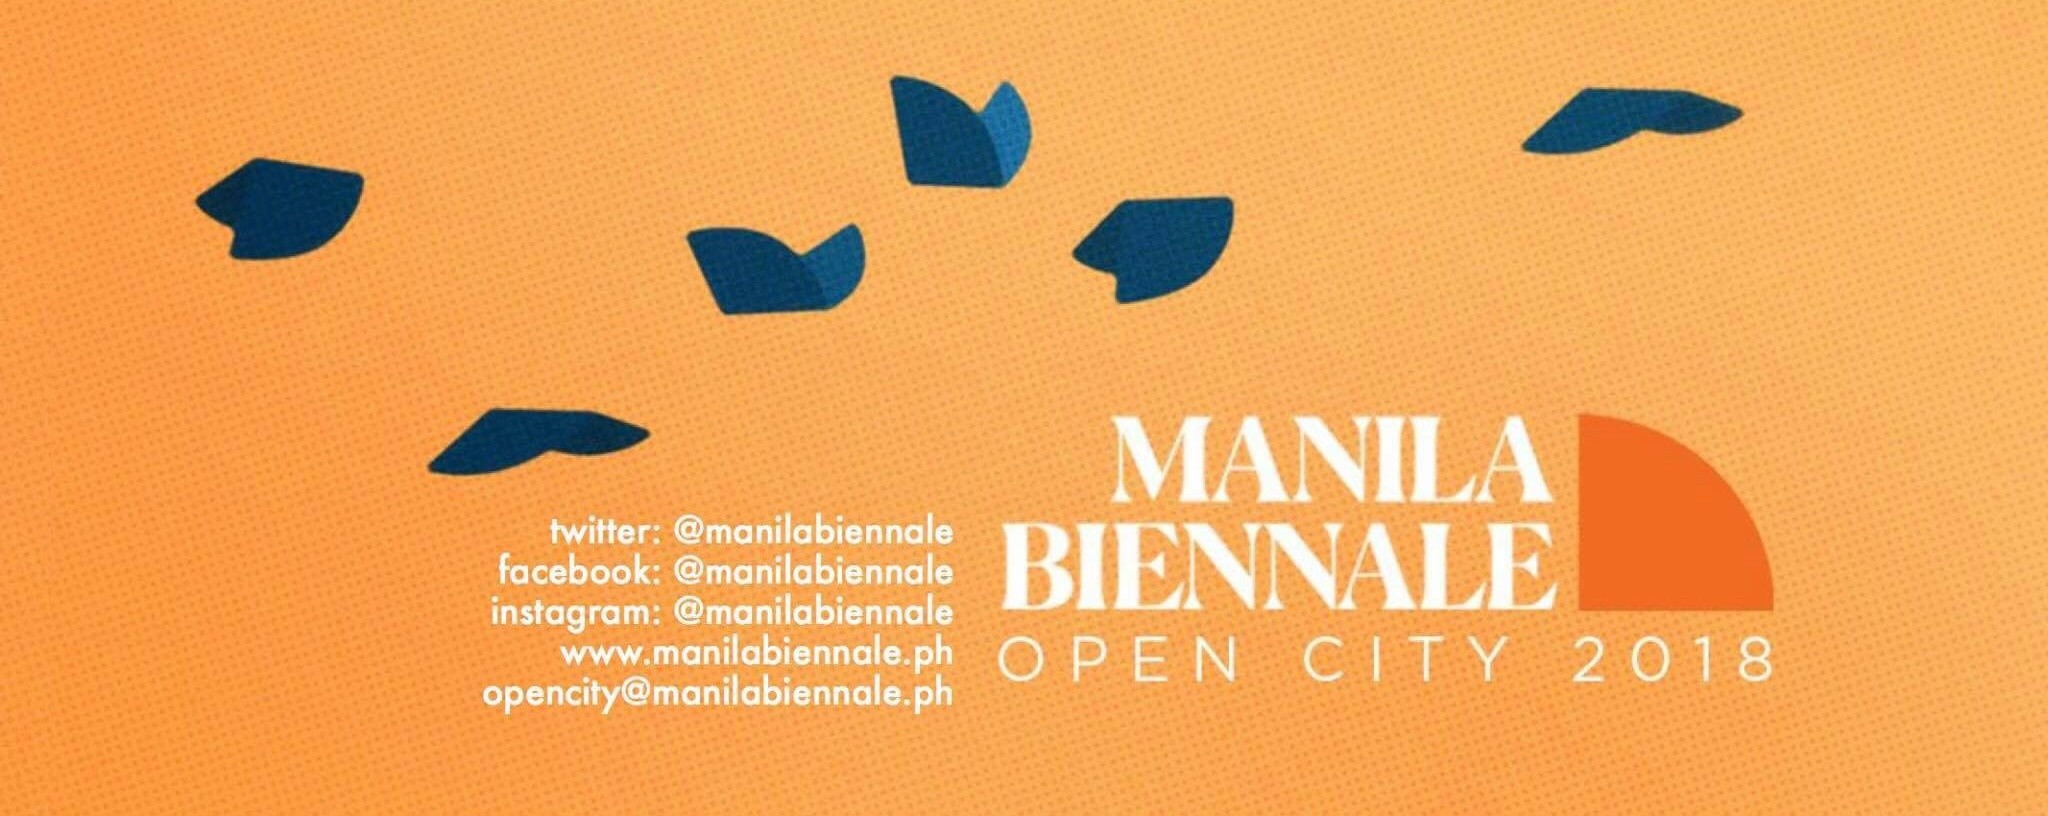 Manila Biennale: OPEN City 2018